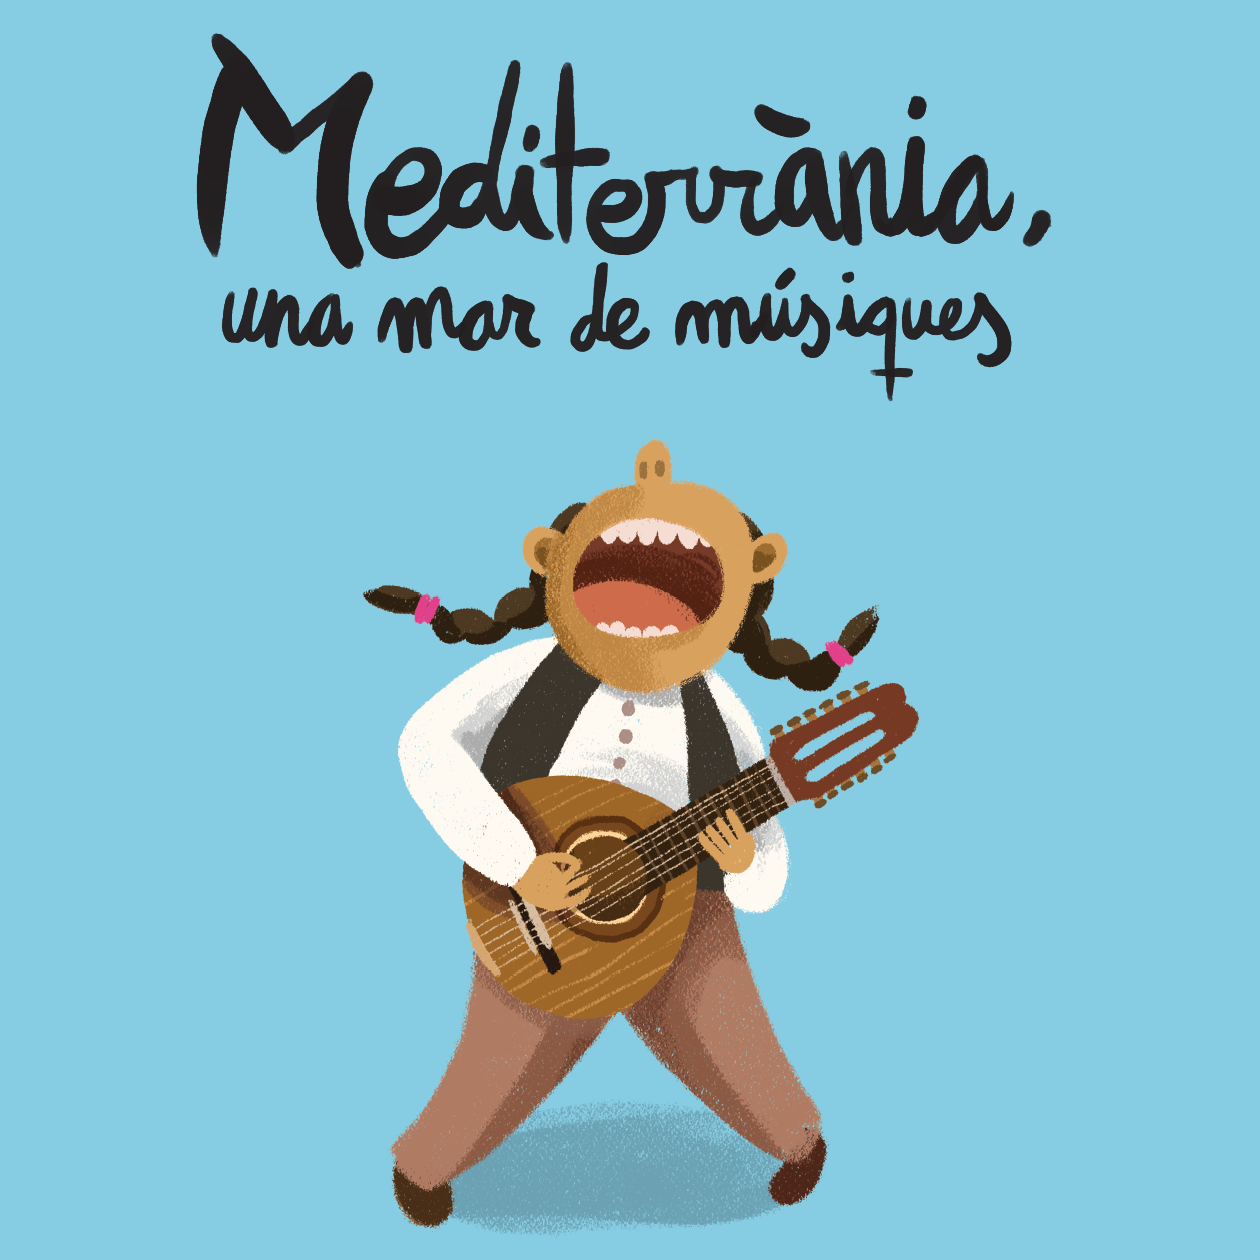 Mediterrània, un mar de músiques